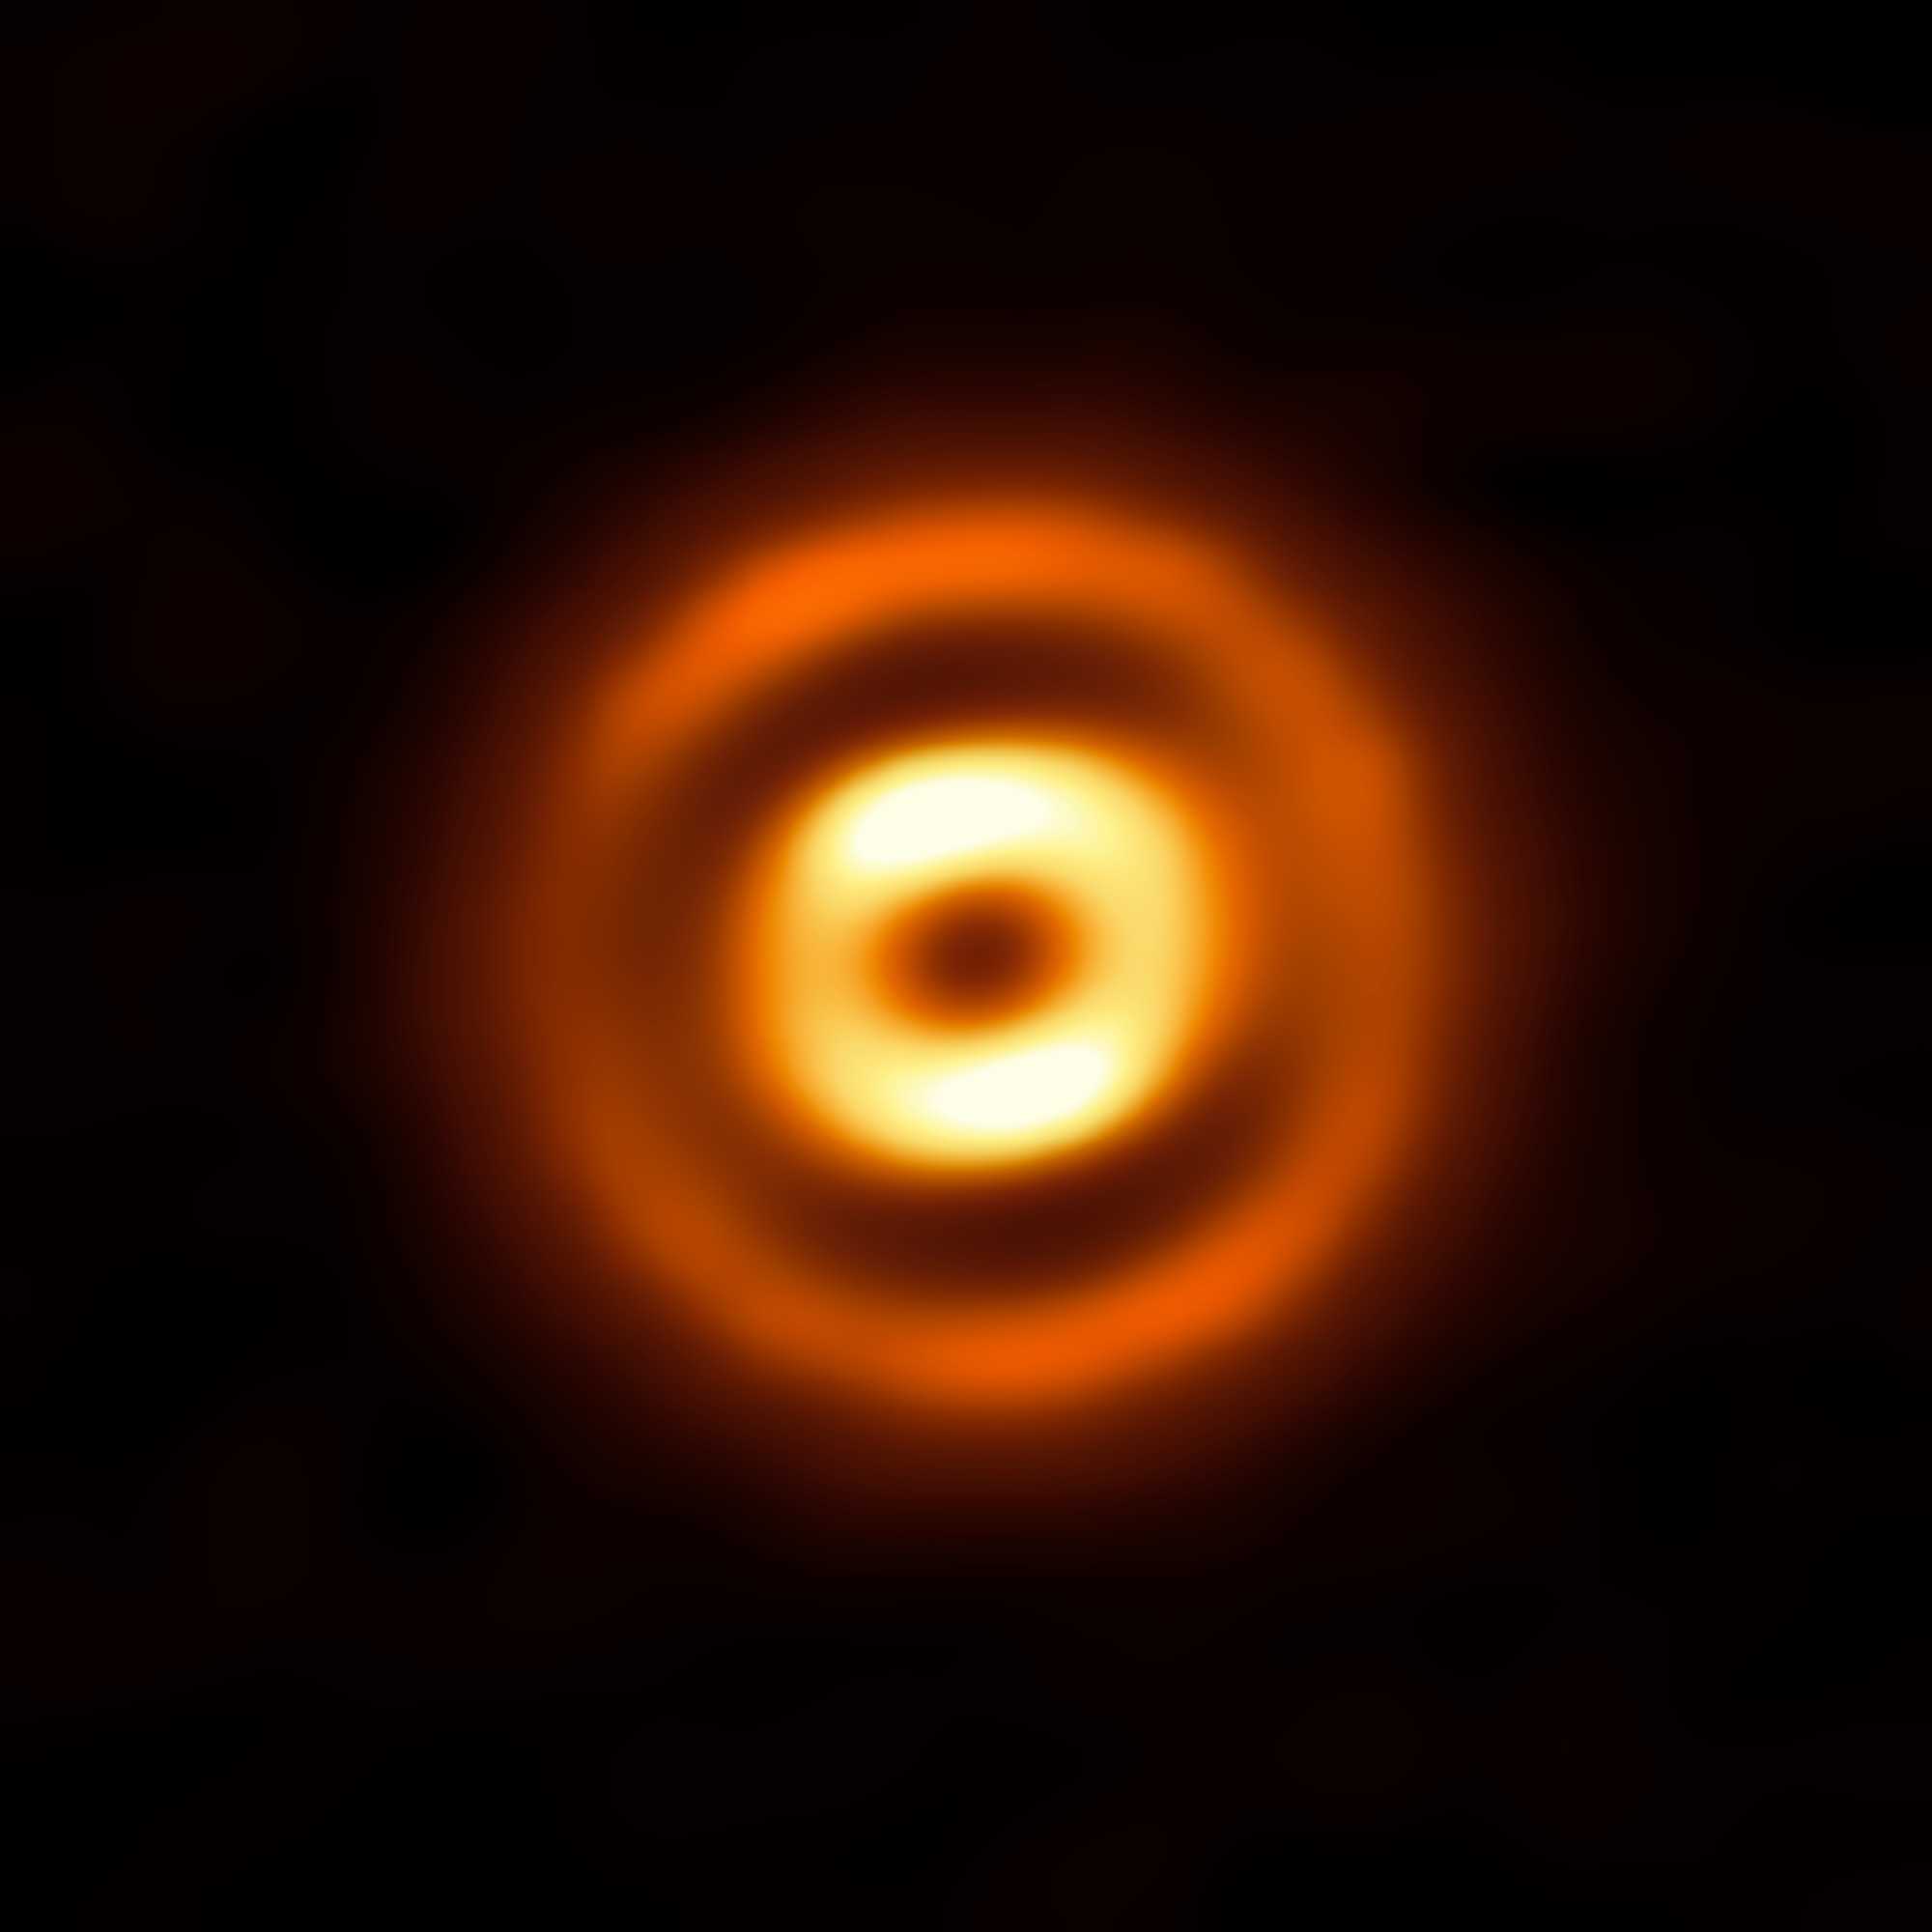 Астрономы получили изображение формирующейся экзопланеты в звездной системе HD 169142